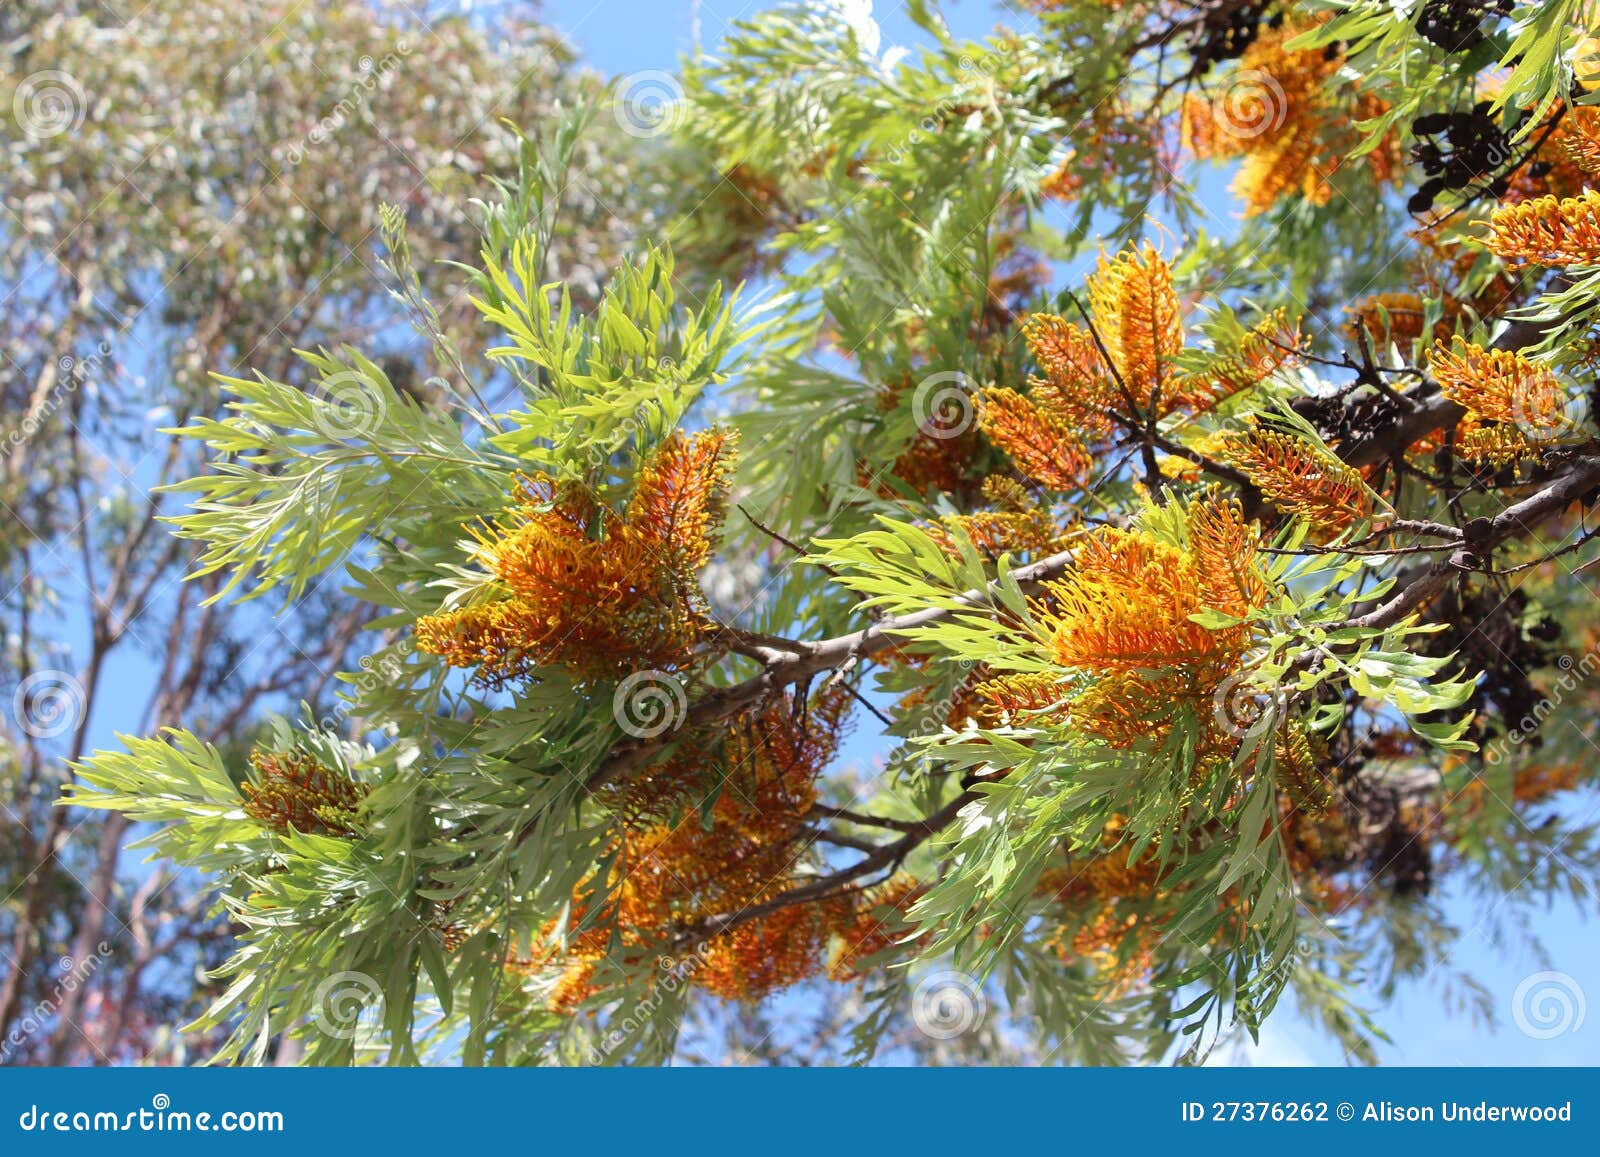 grevillea robusta australian silky oak tree